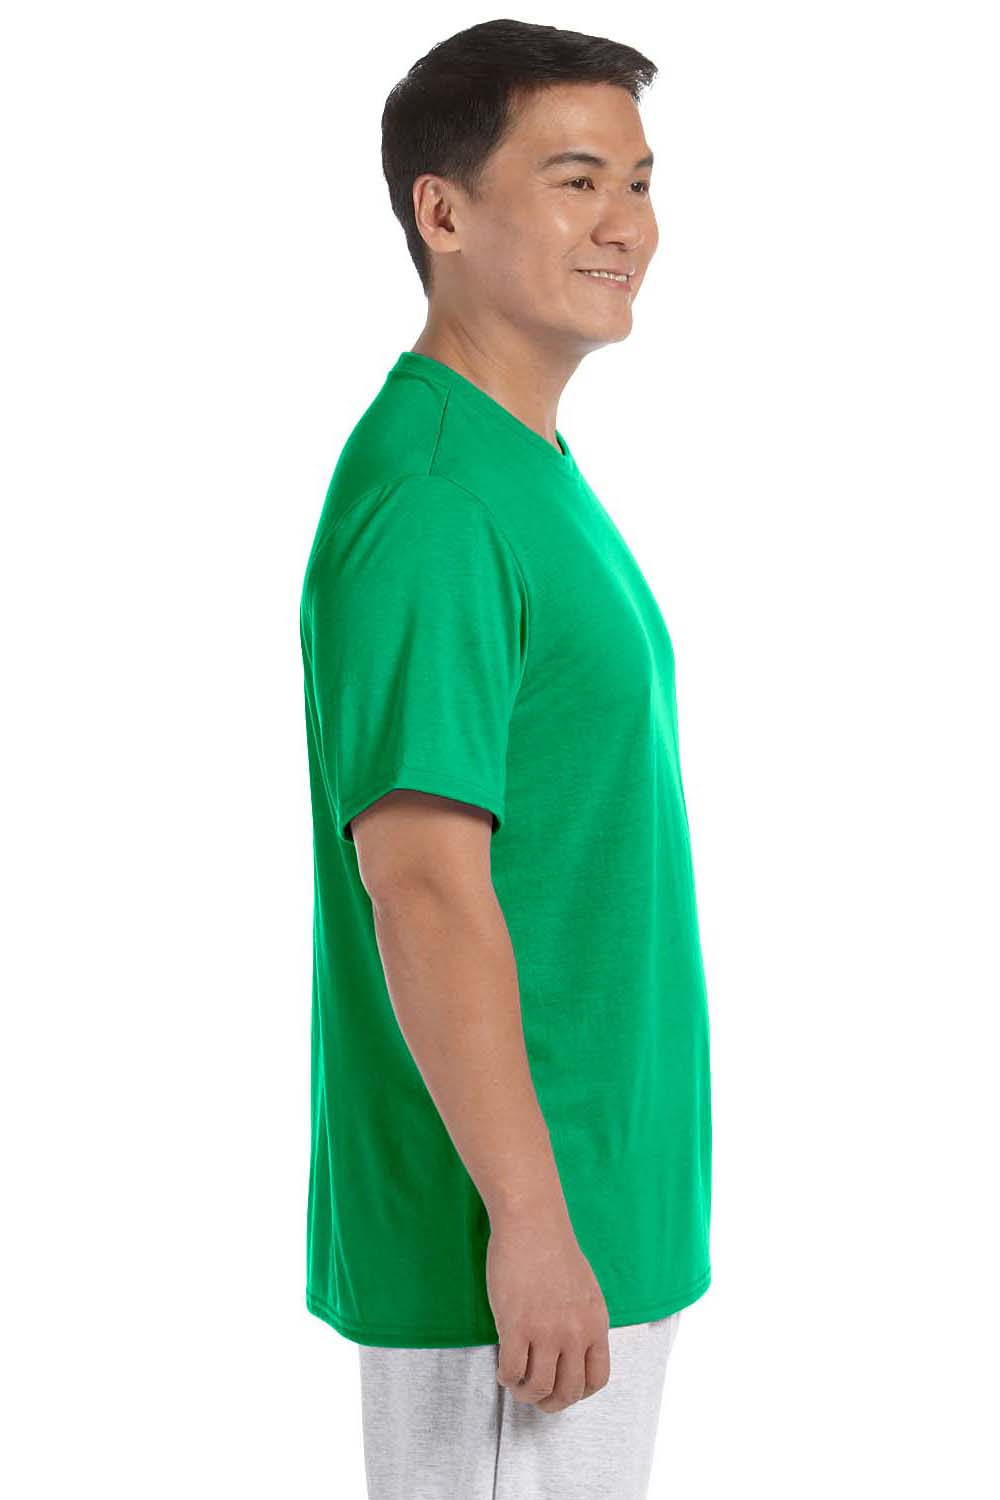 Gildan G420 Mens Performance Jersey Moisture Wicking Short Sleeve Crewneck T-Shirt Irish Green Side